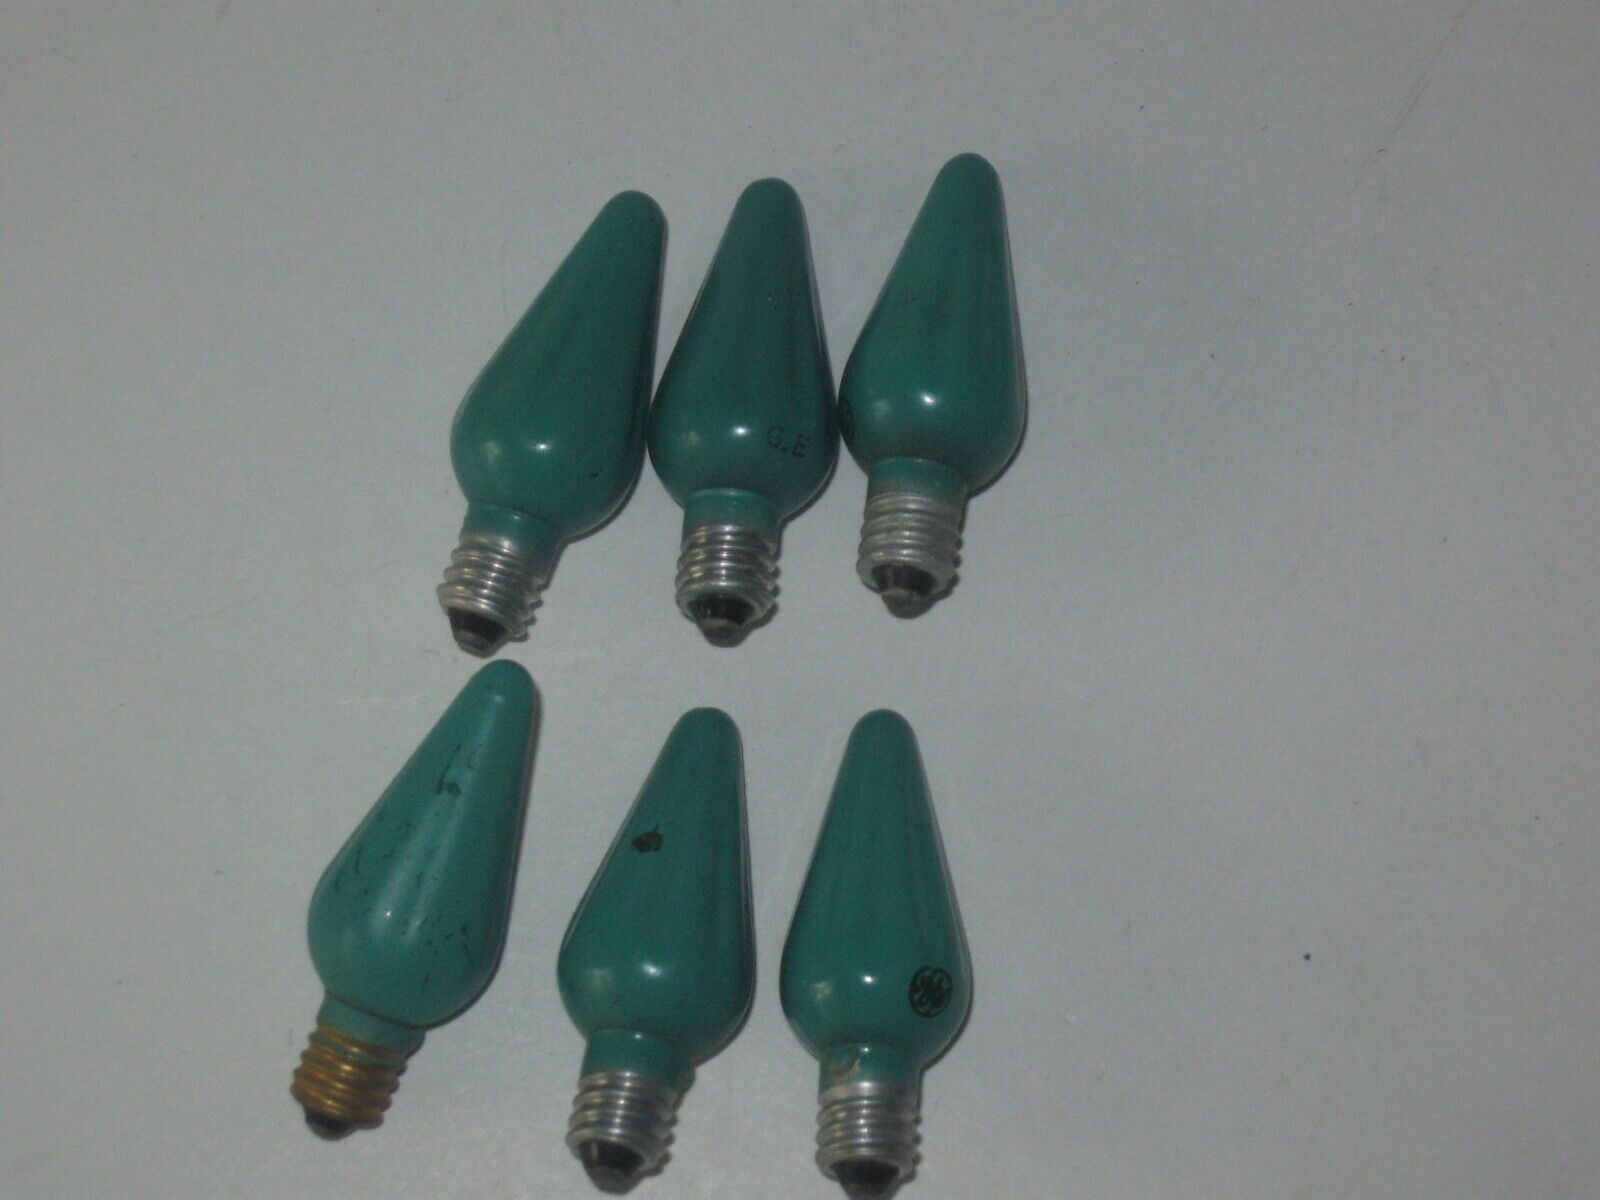 6 Vintage C6 GE Christmas Bulbs GREEN Tested